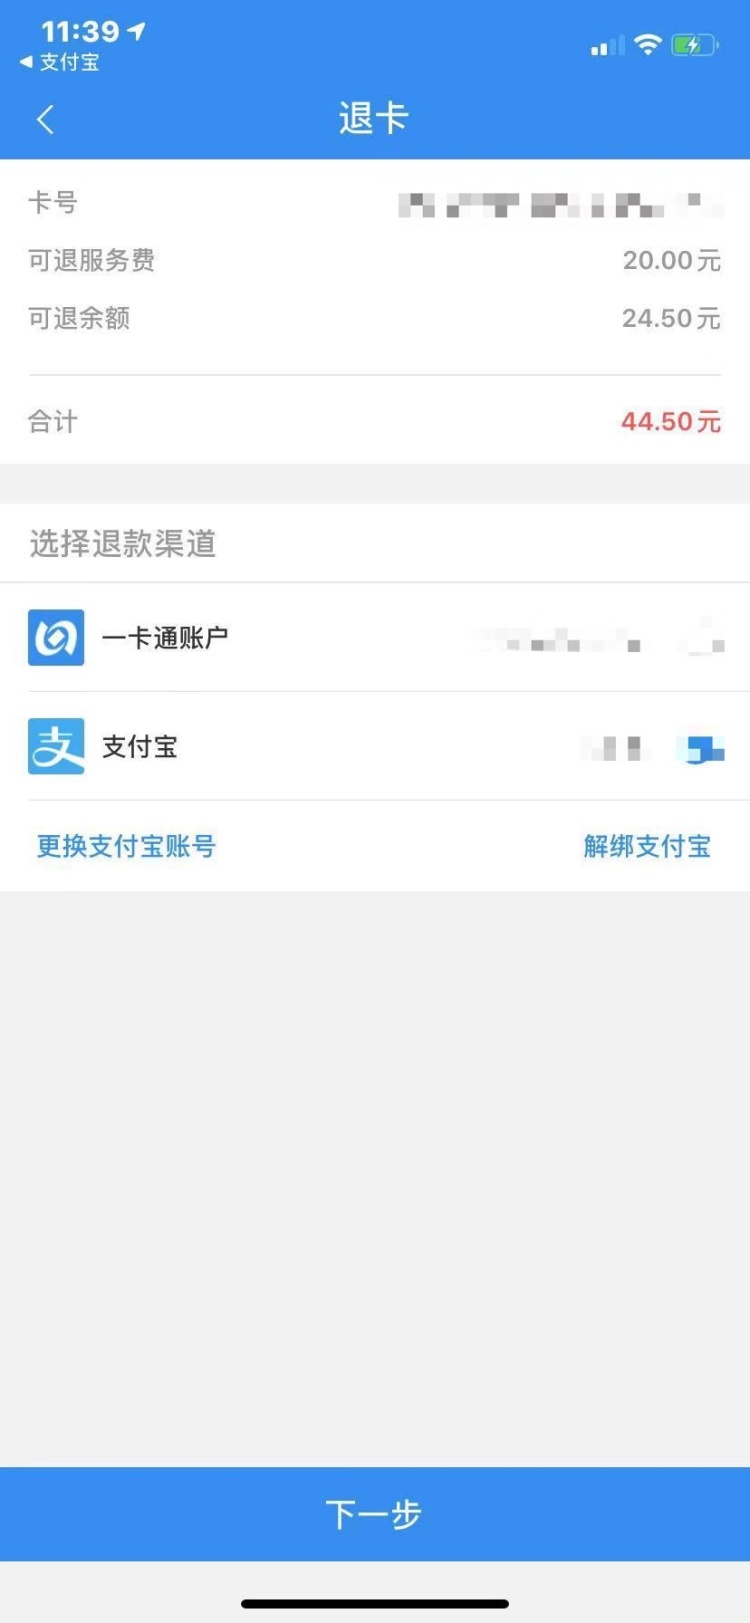 8月2日起北京市政交通一卡通免开卡费，已开通用户可退费